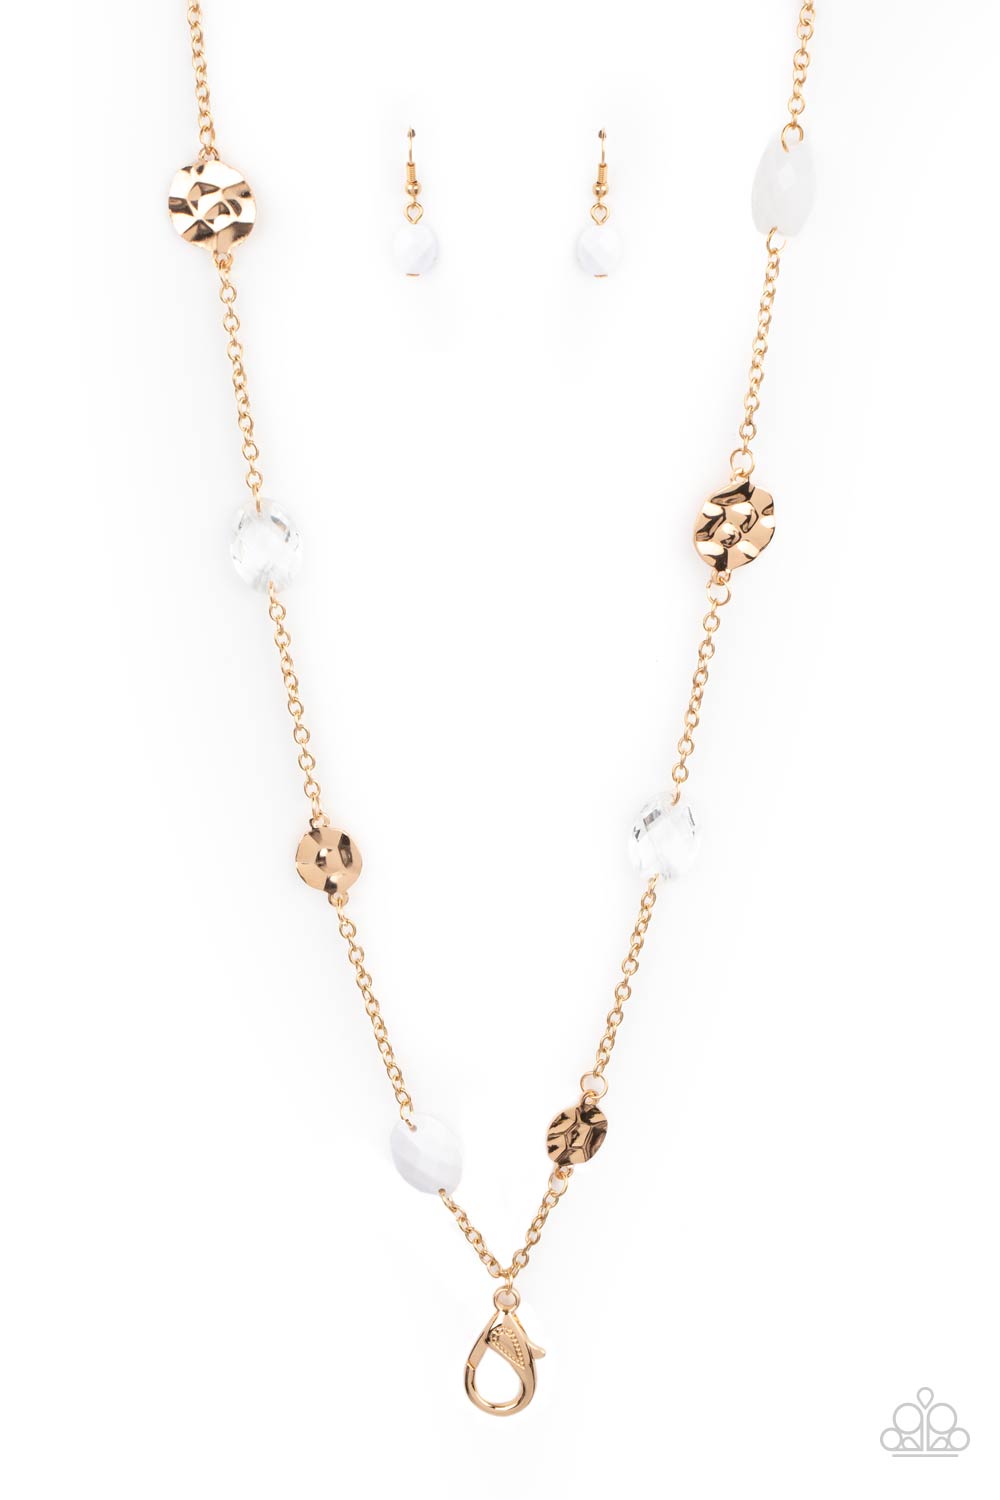 Glossy Glamorous - white - Paparazzi LANYARD necklace